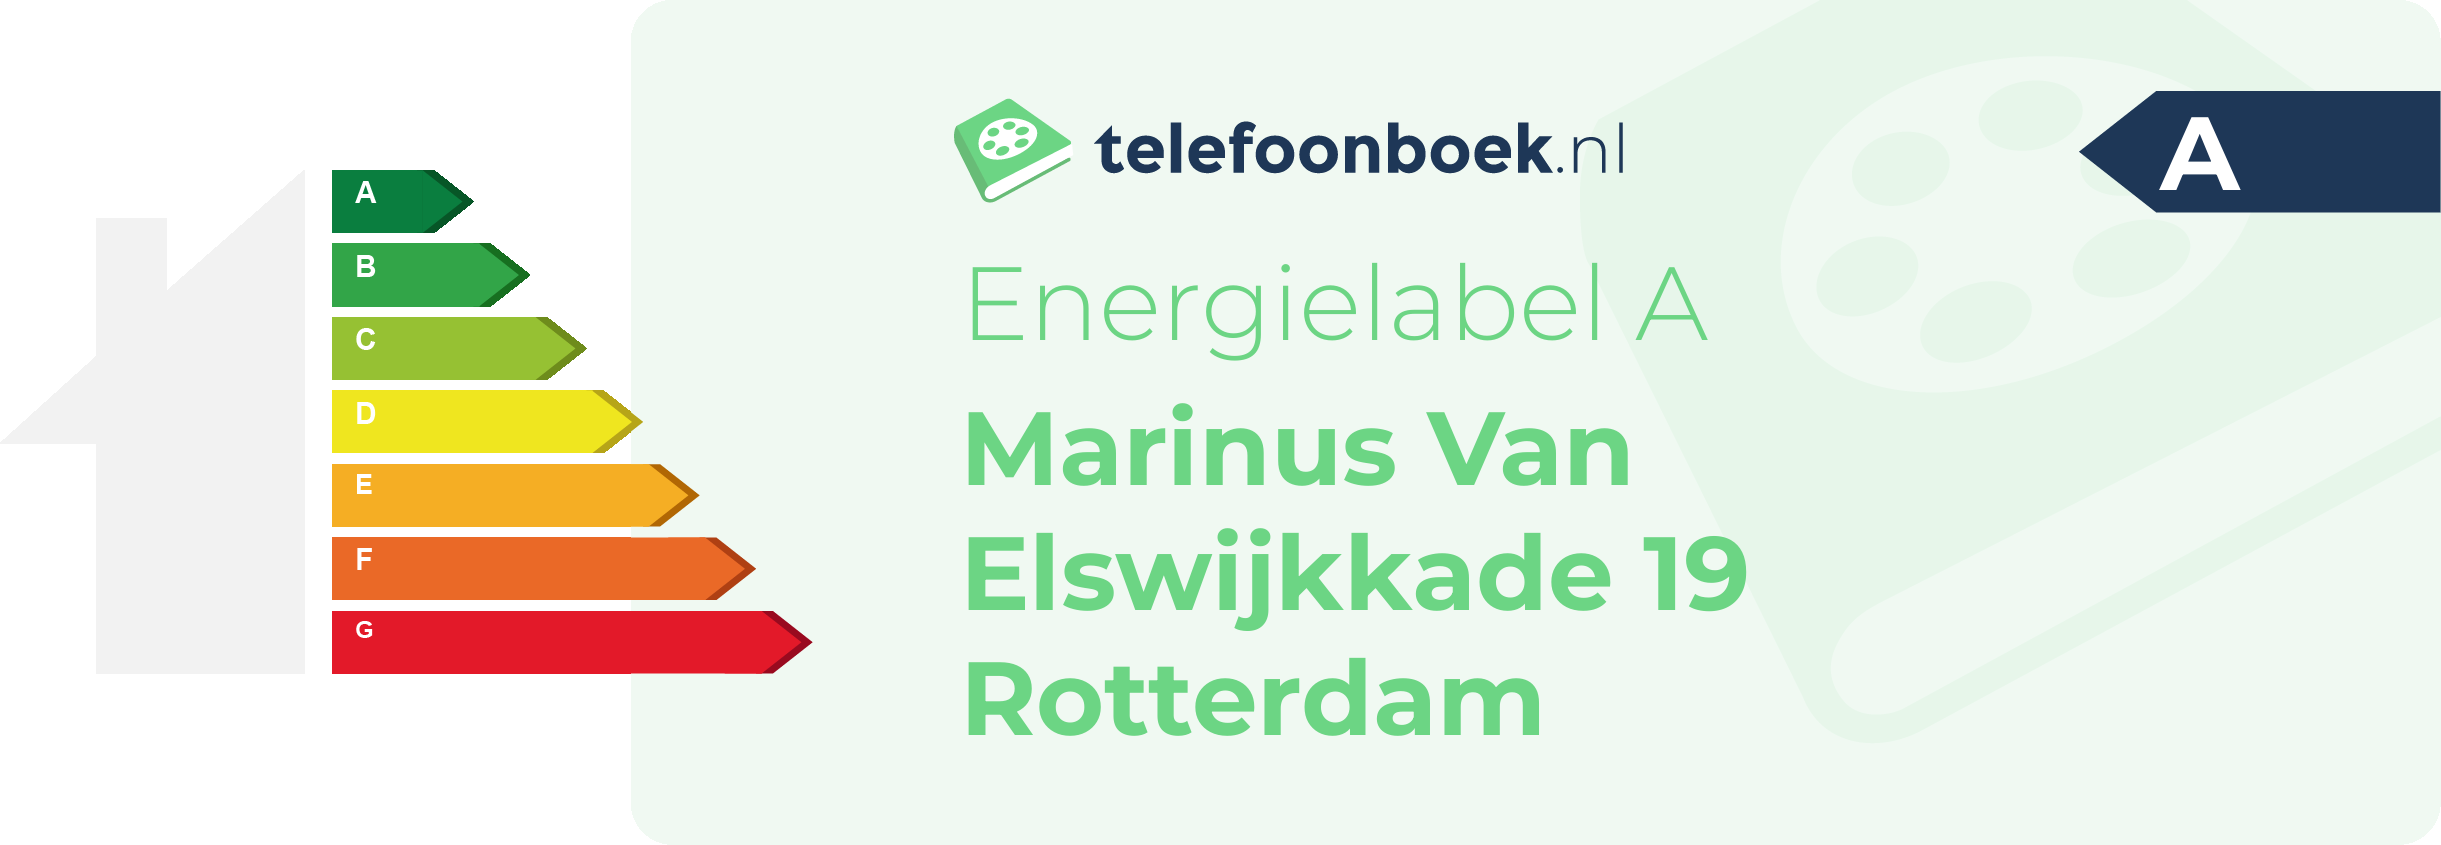 Energielabel Marinus Van Elswijkkade 19 Rotterdam